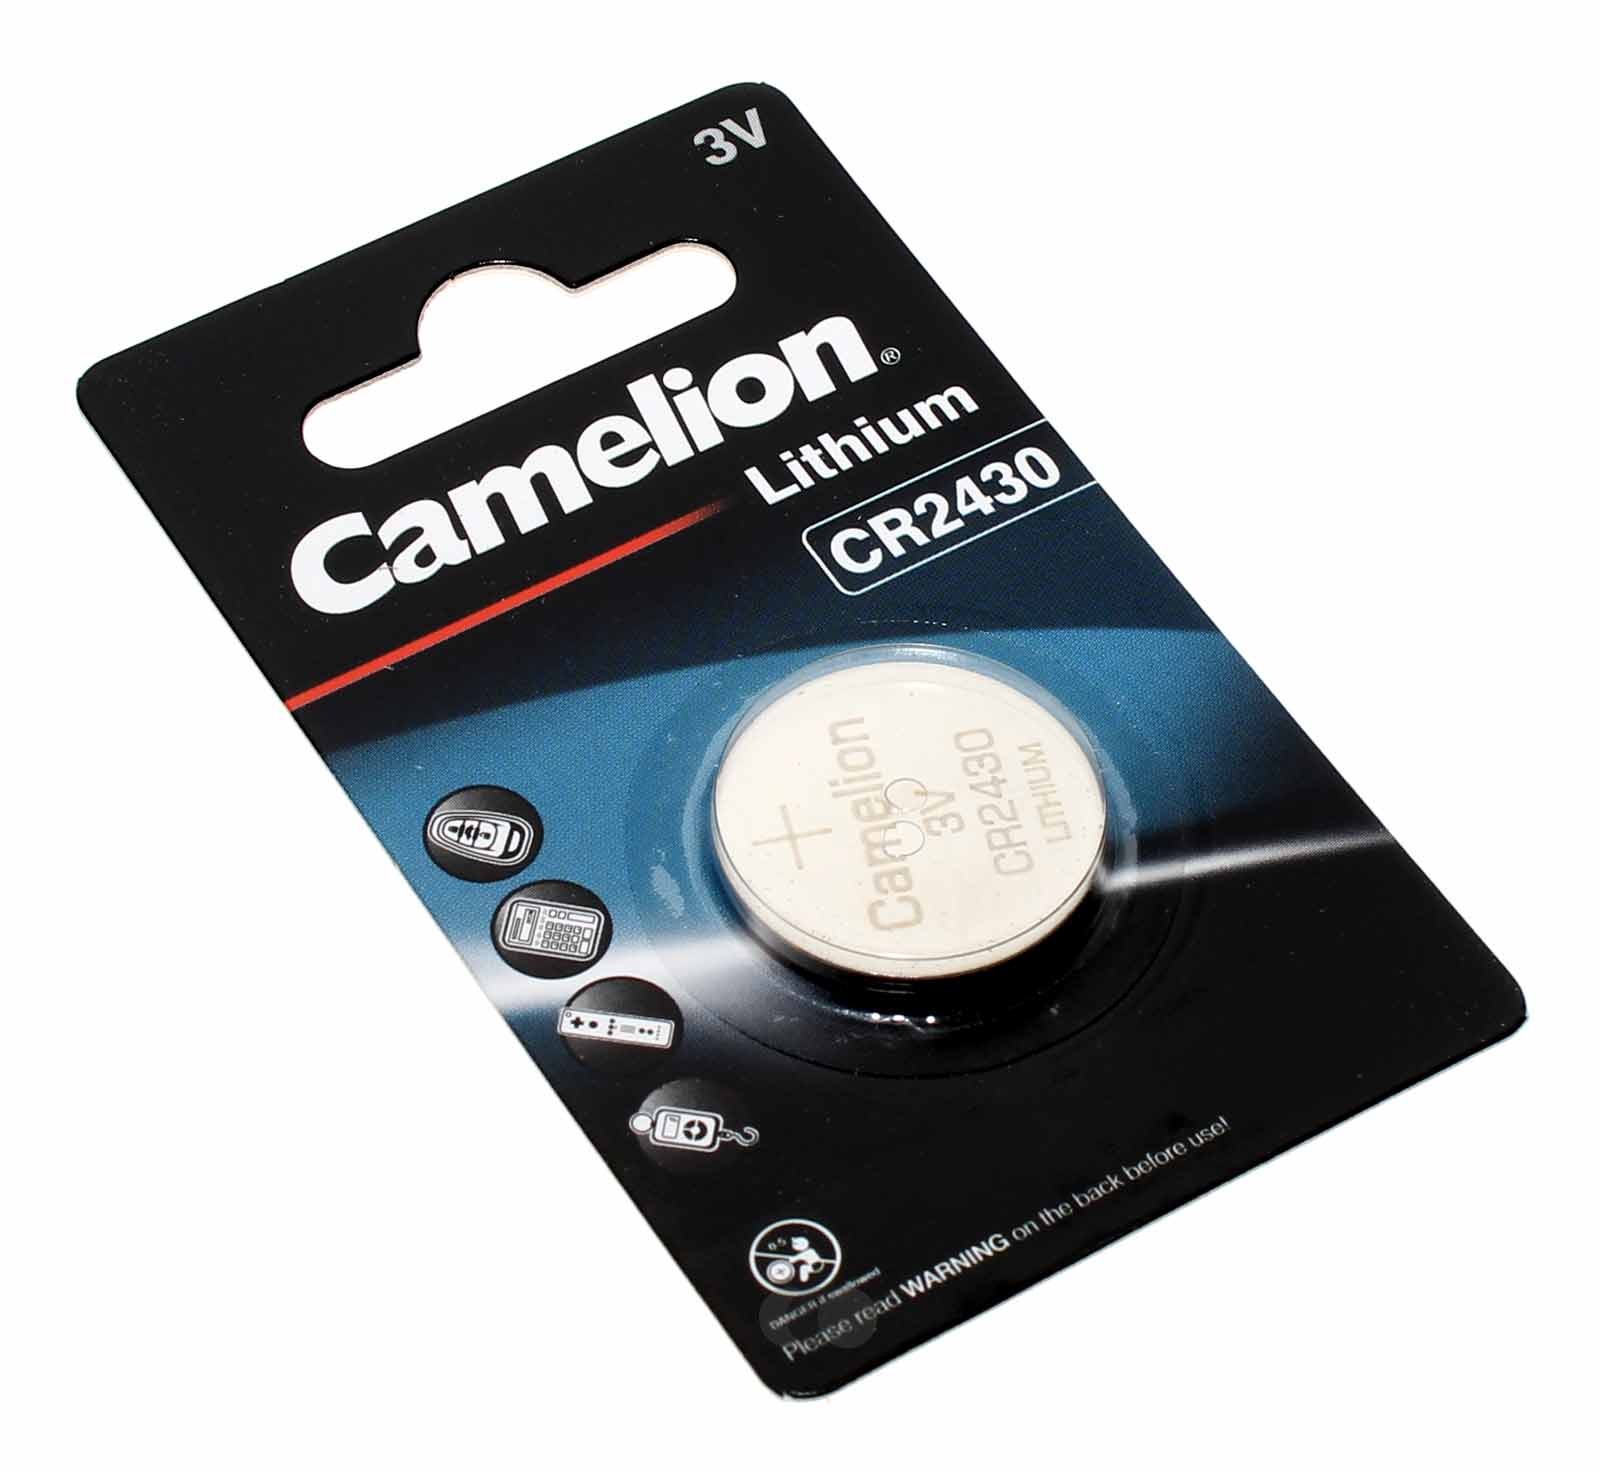 Camelion CR2430 Lithium Knopfzelle Batterie 3V, 270mAh, CR2430-BP1, DL2430, 5011LC, E-CR2430, Uhr Taschenrechner